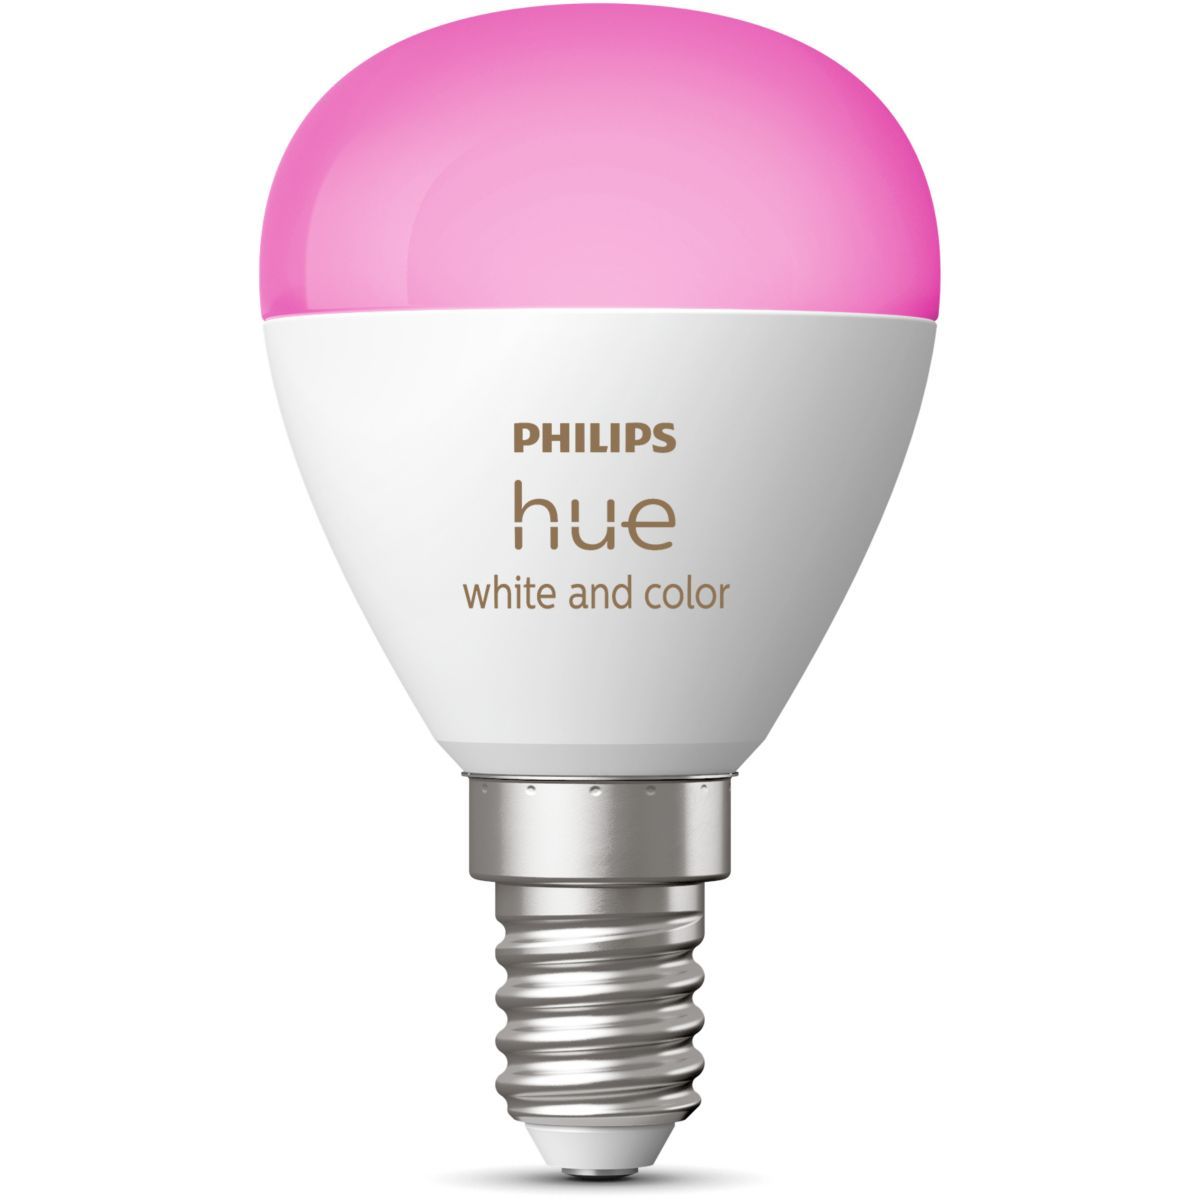 Philips - Ampoule connectée PHILIPS HUE W&C E27 Elipse Deco